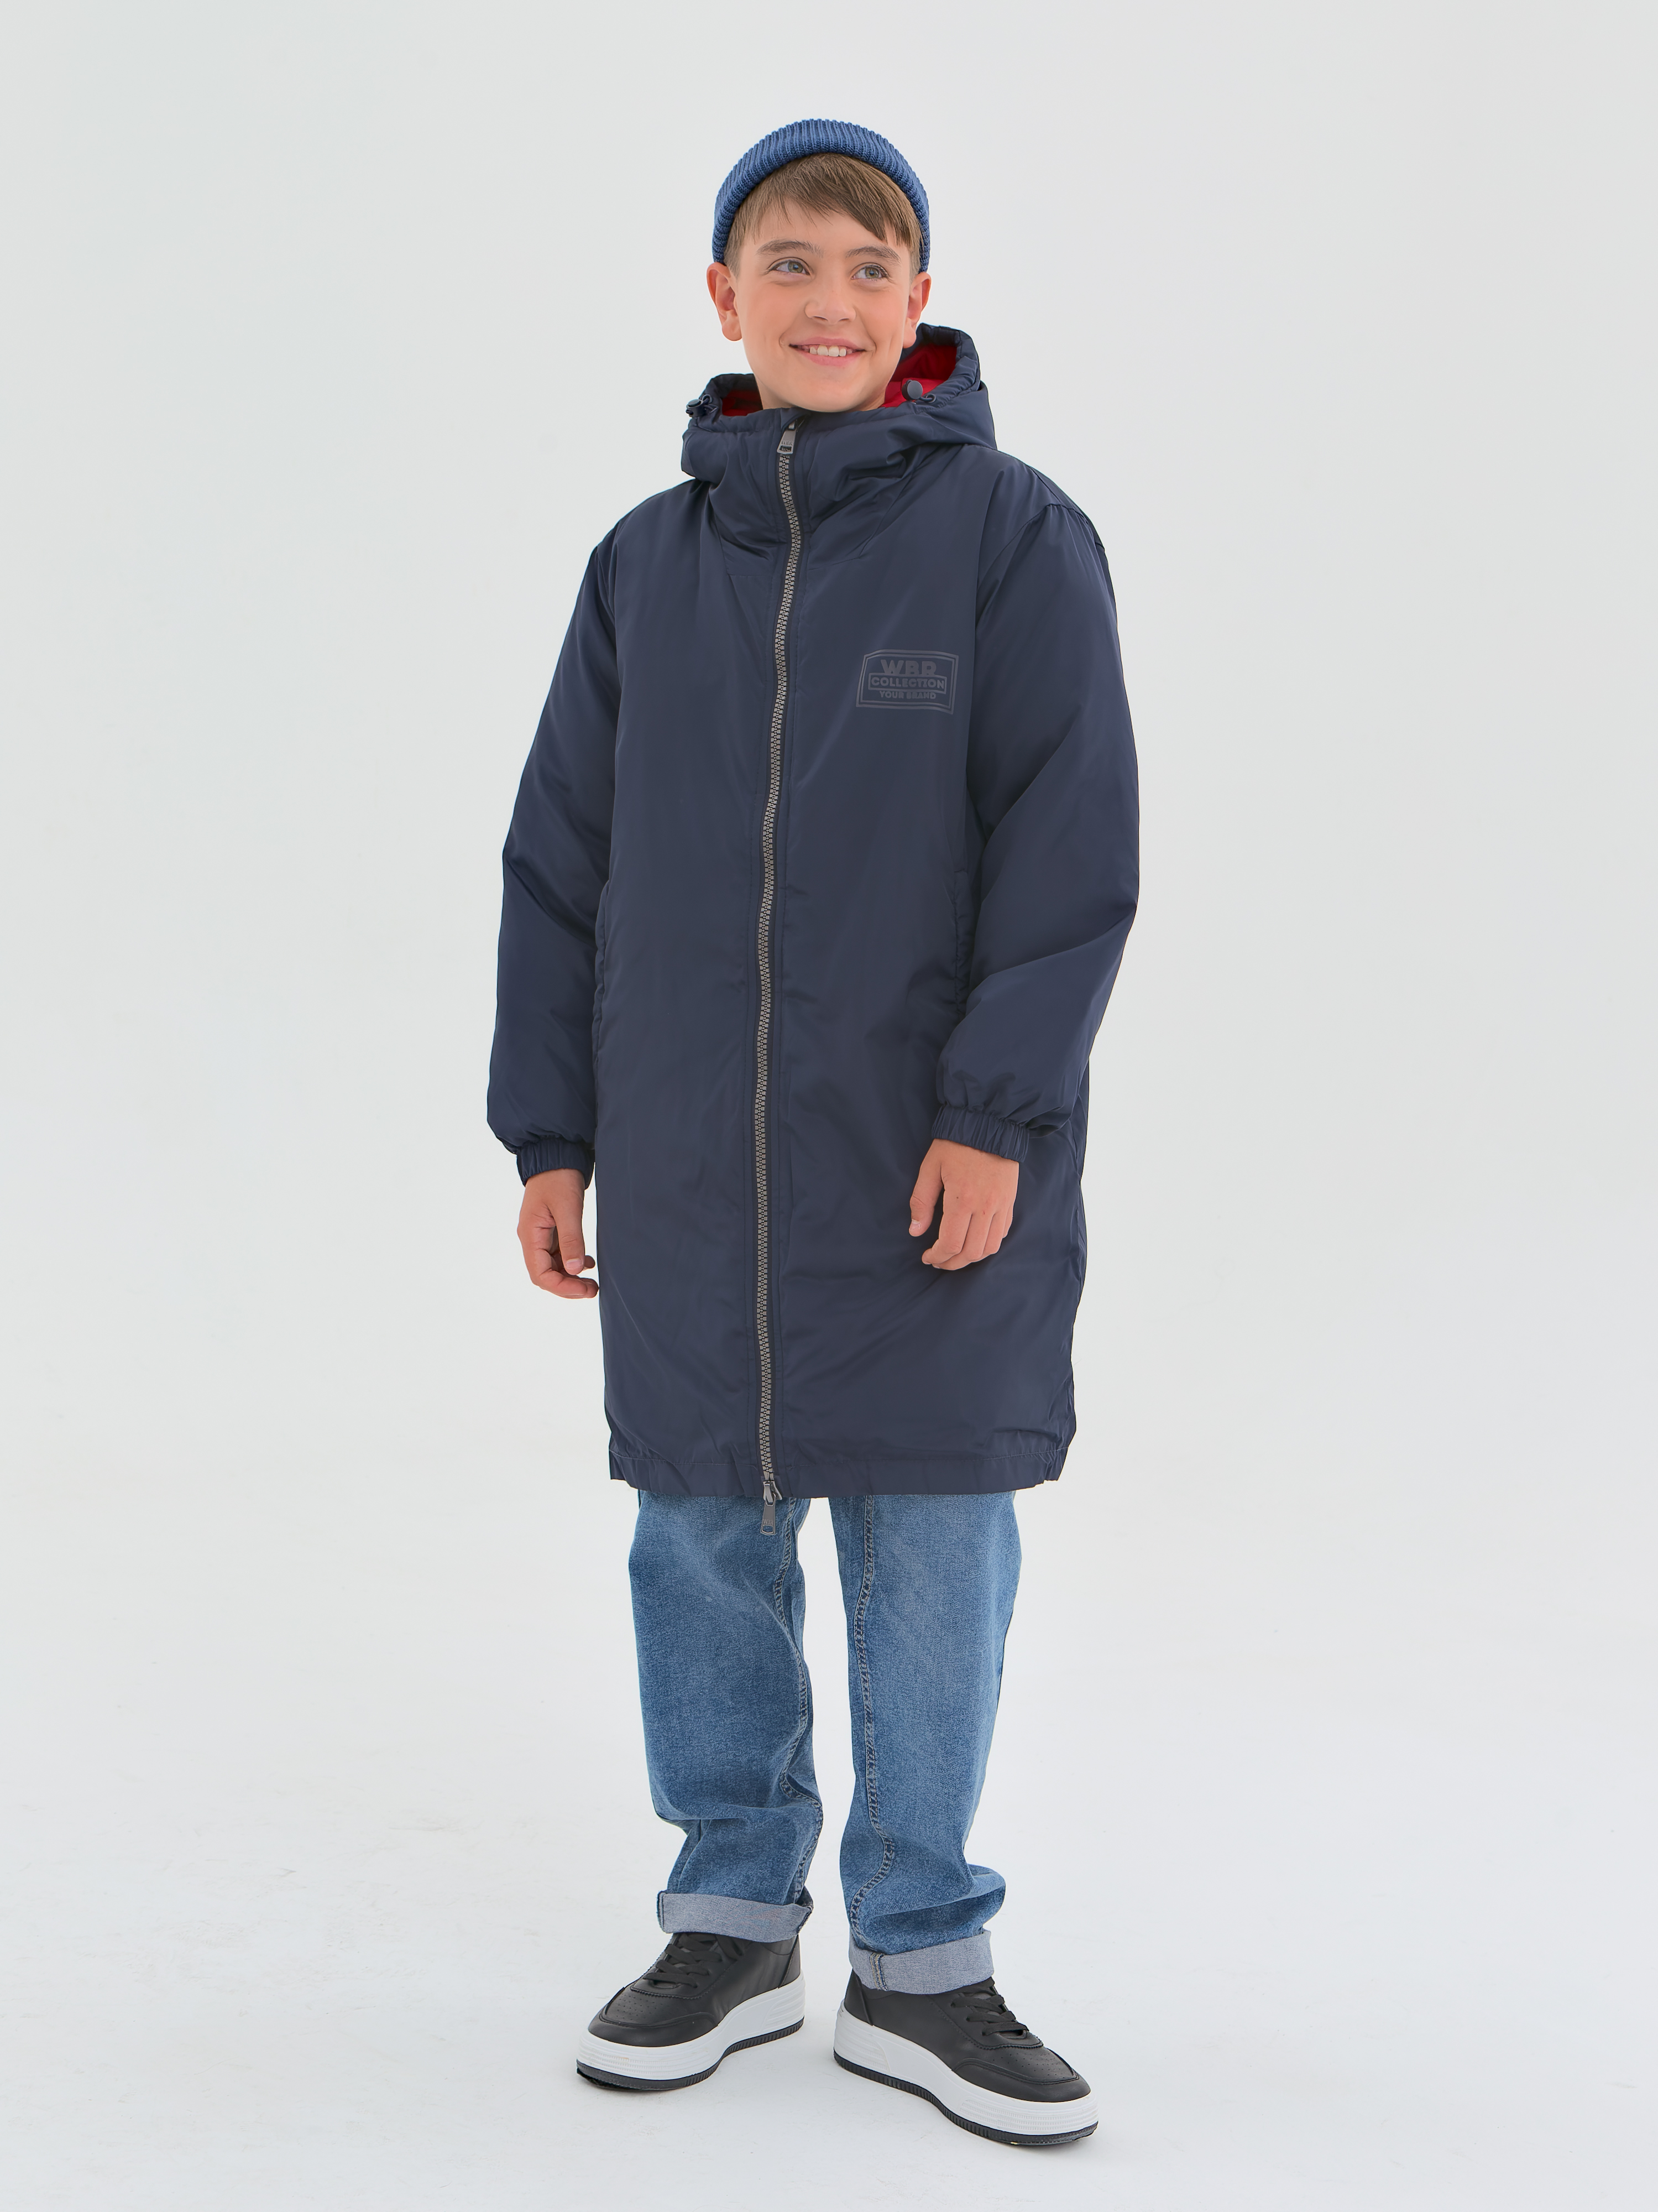 Пальто детское WBR 68-006, синий, 140 серое пальто пуховик herno детское